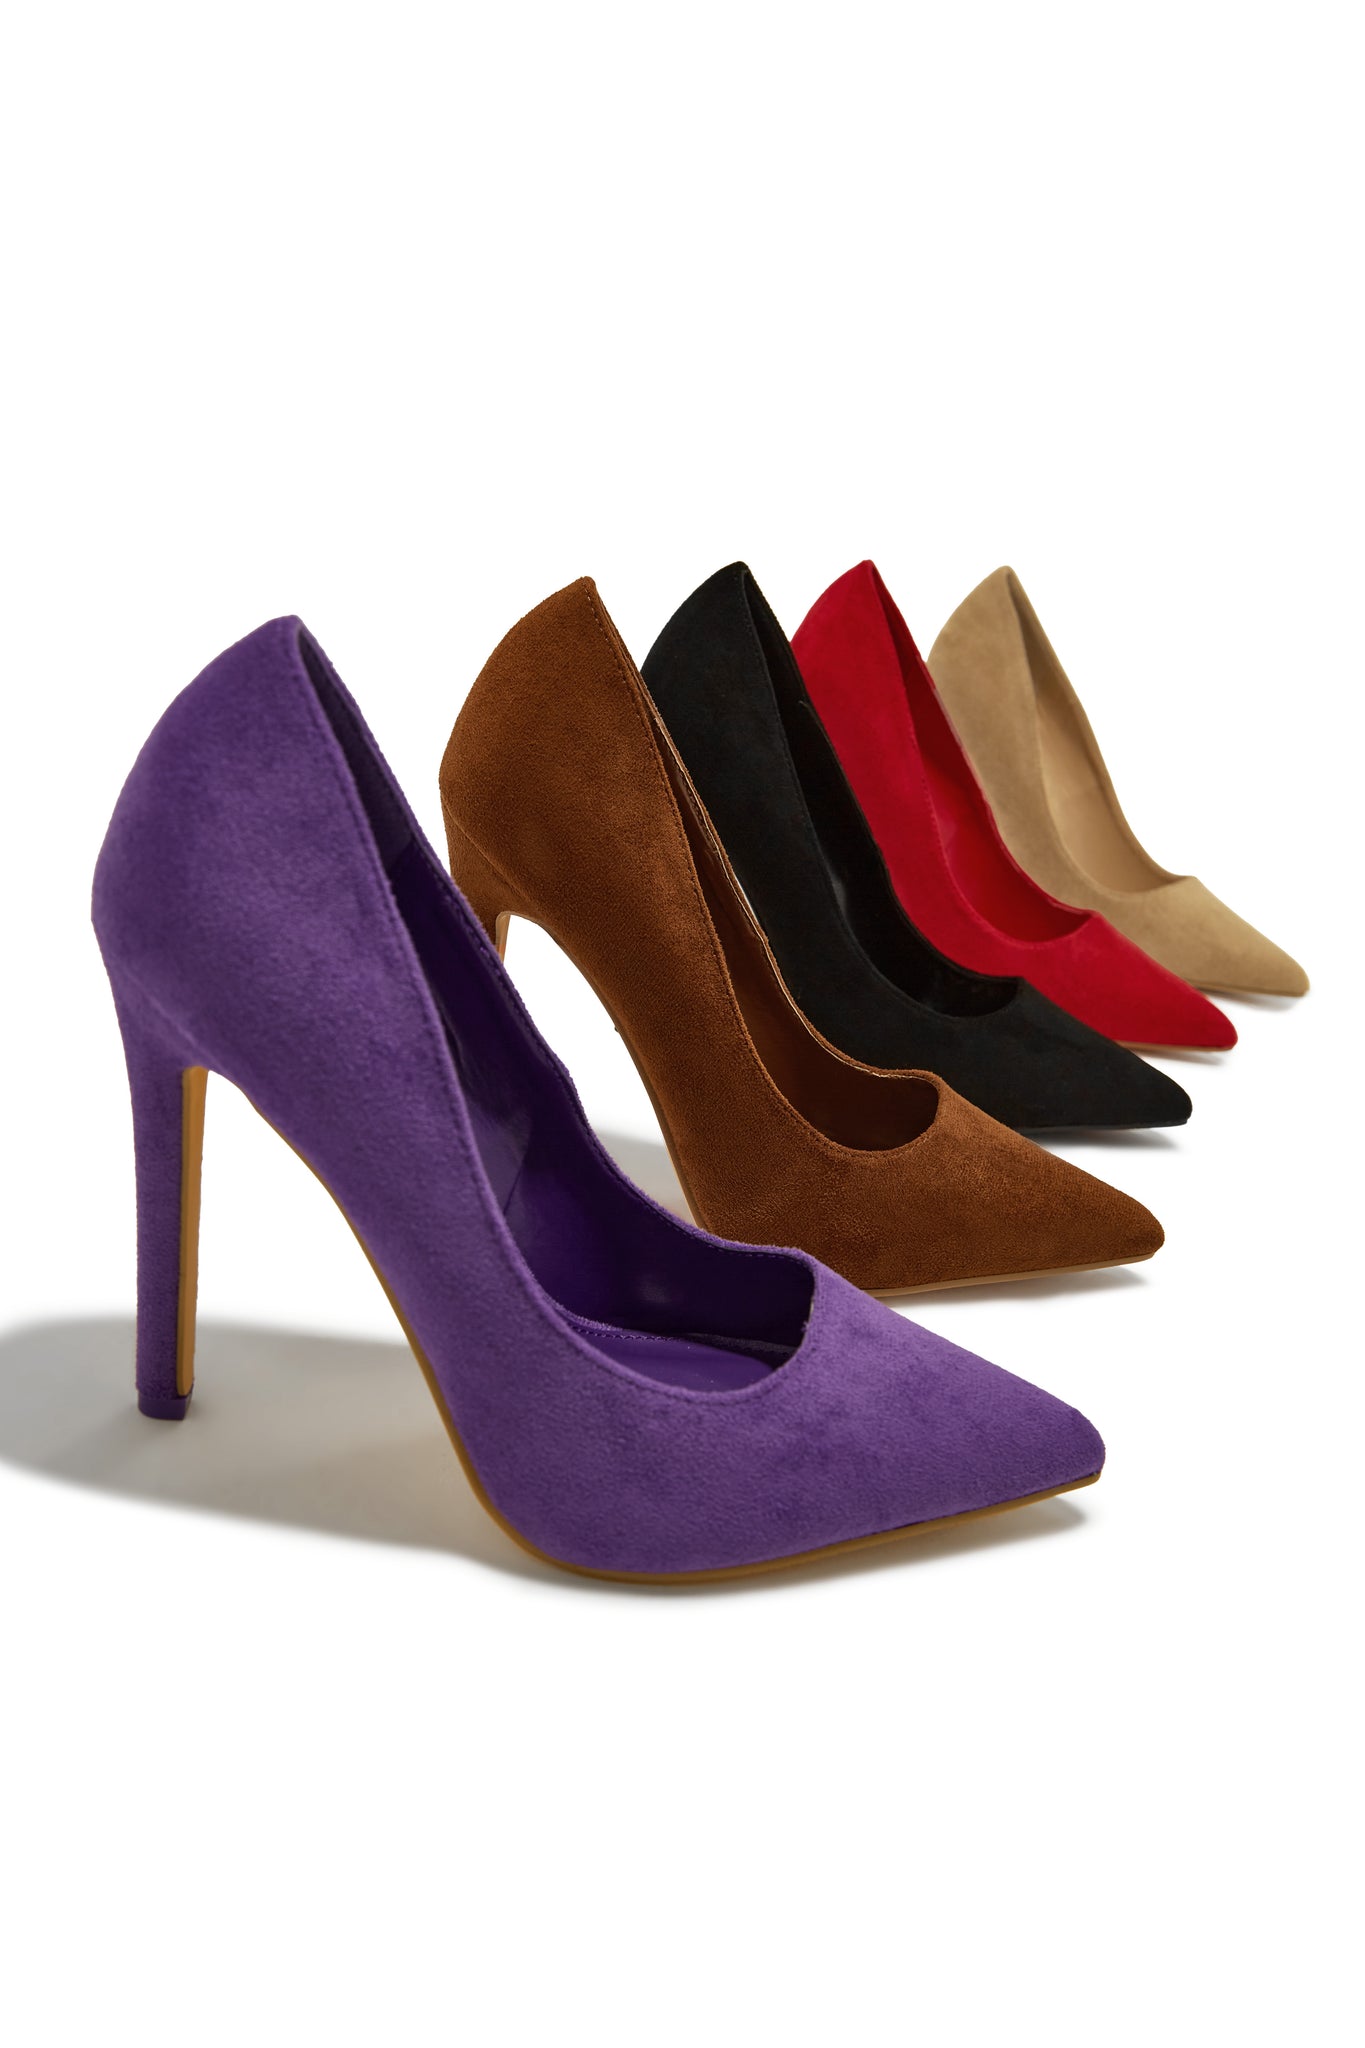 Premium Photo | Female purple shoes over white